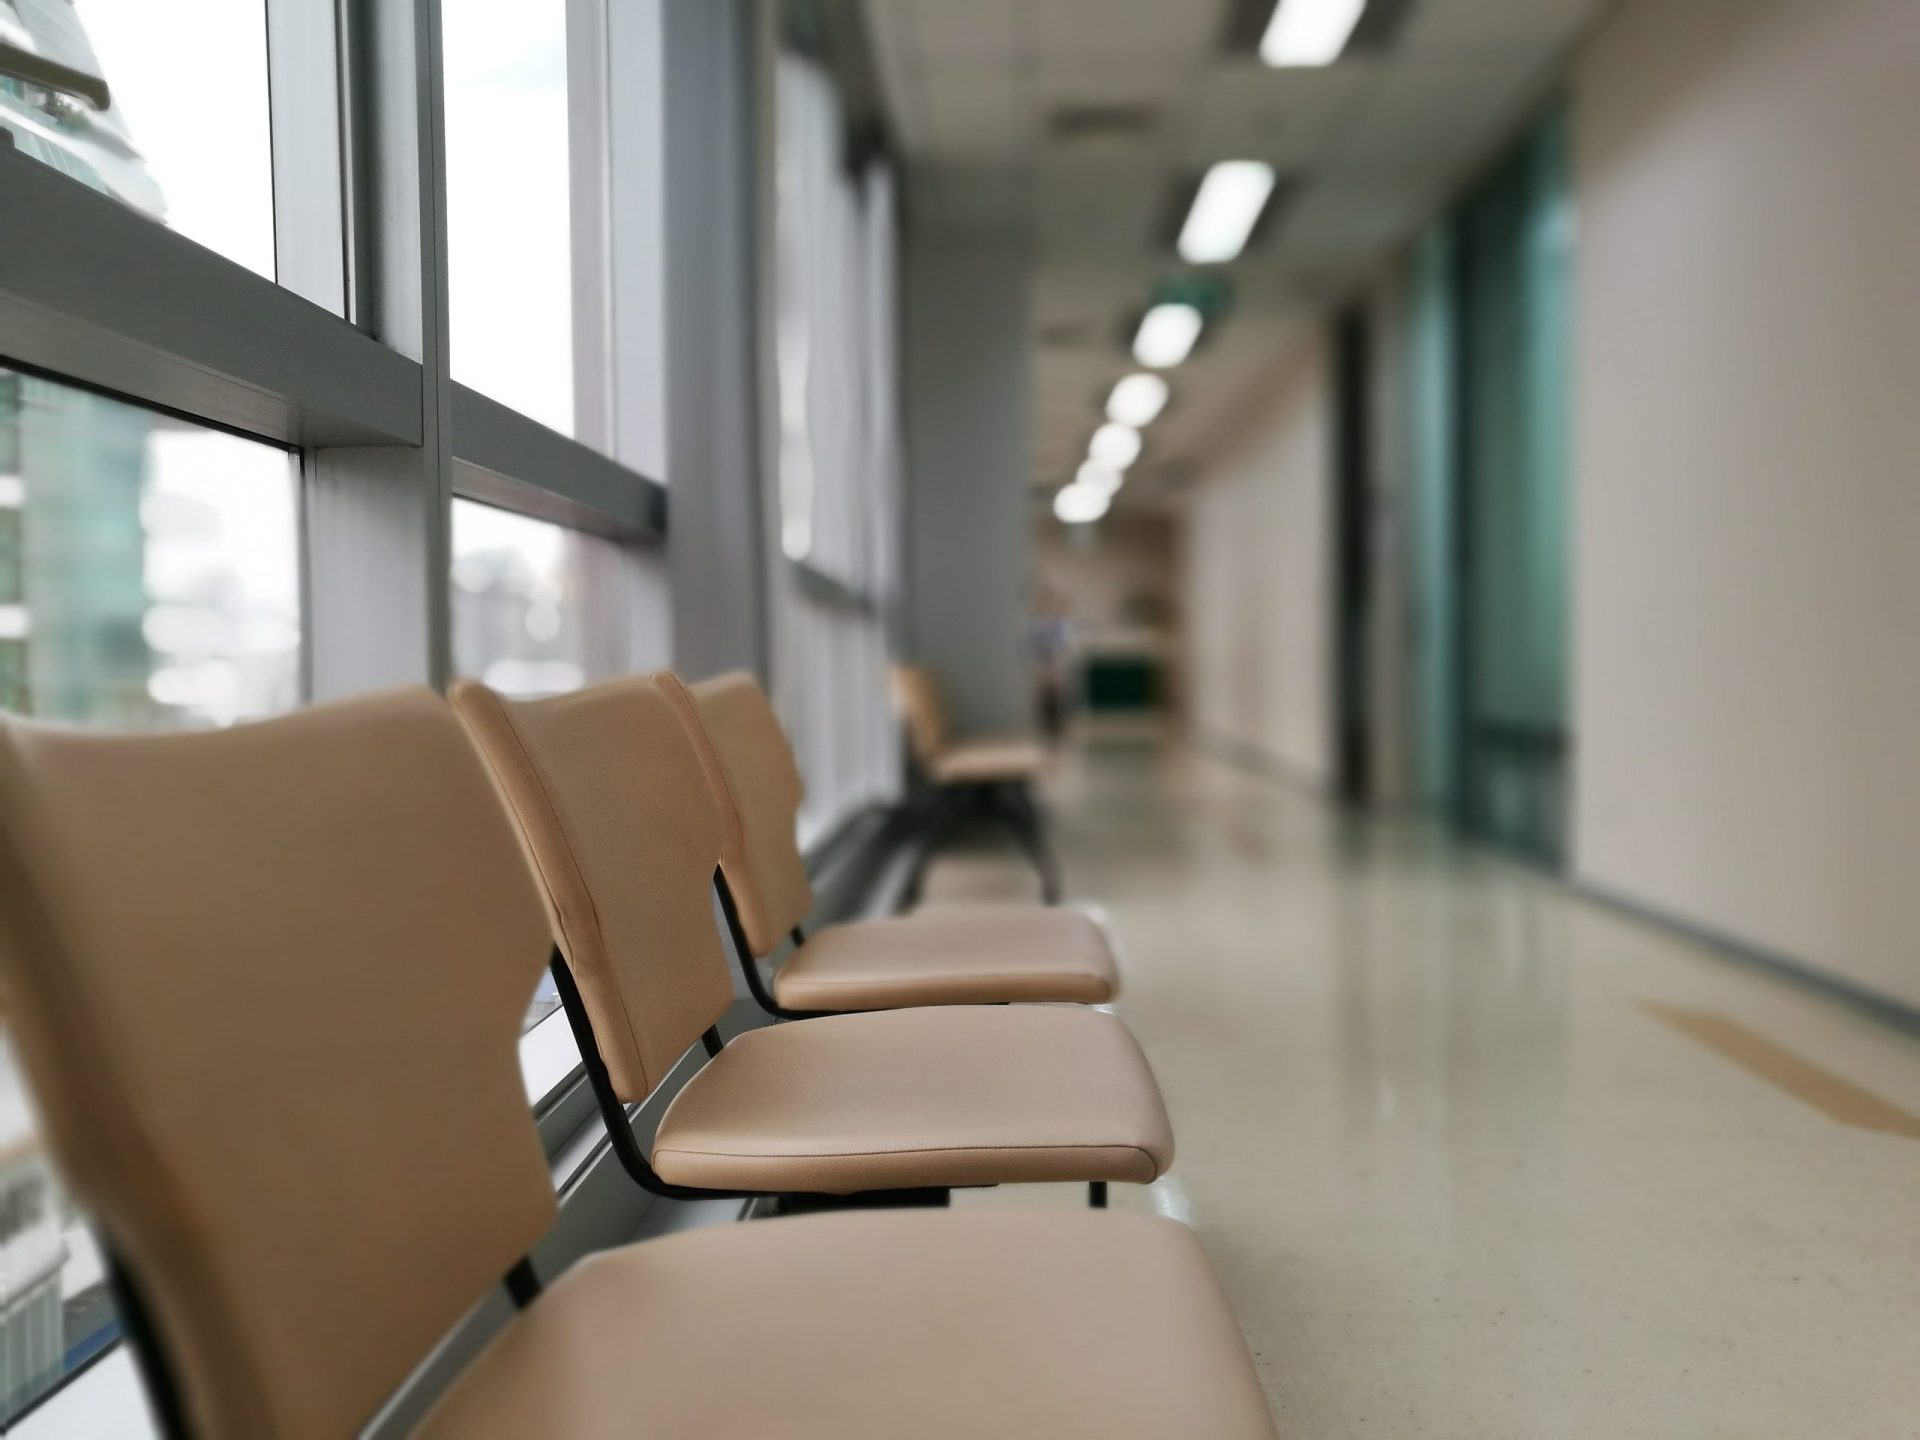 BE denuncia falhas no Hospital  de Cascais